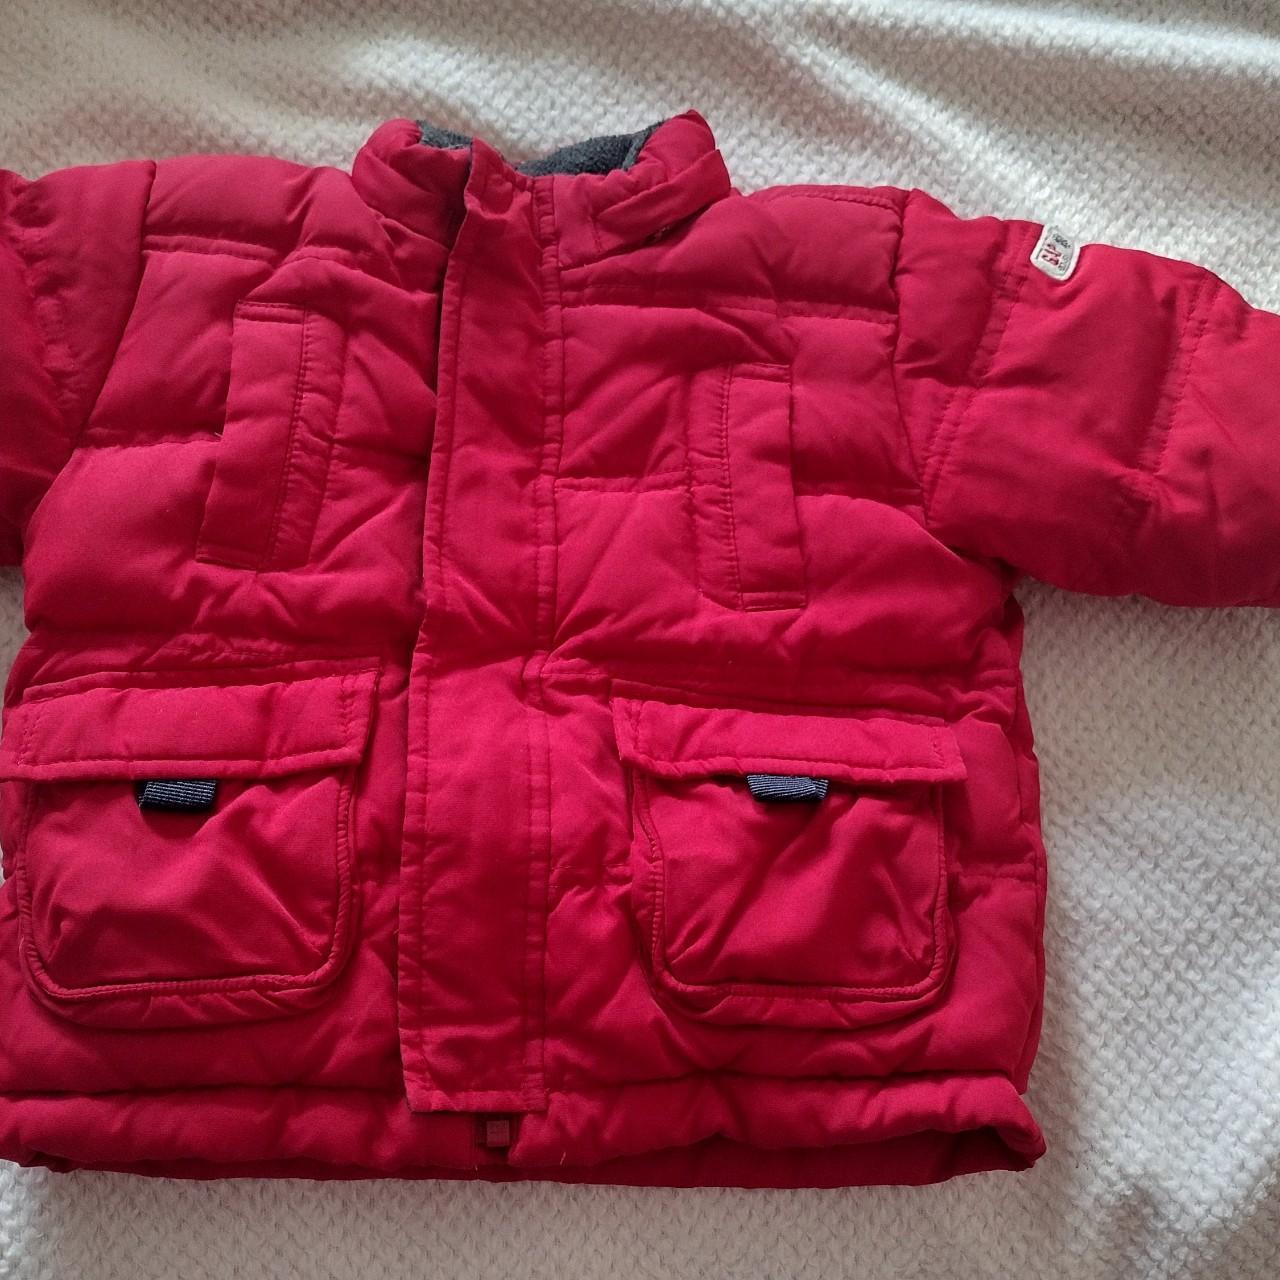 Baby GAP Red Puffa Jacket Coat Size Toddler 6 - 12... - Depop